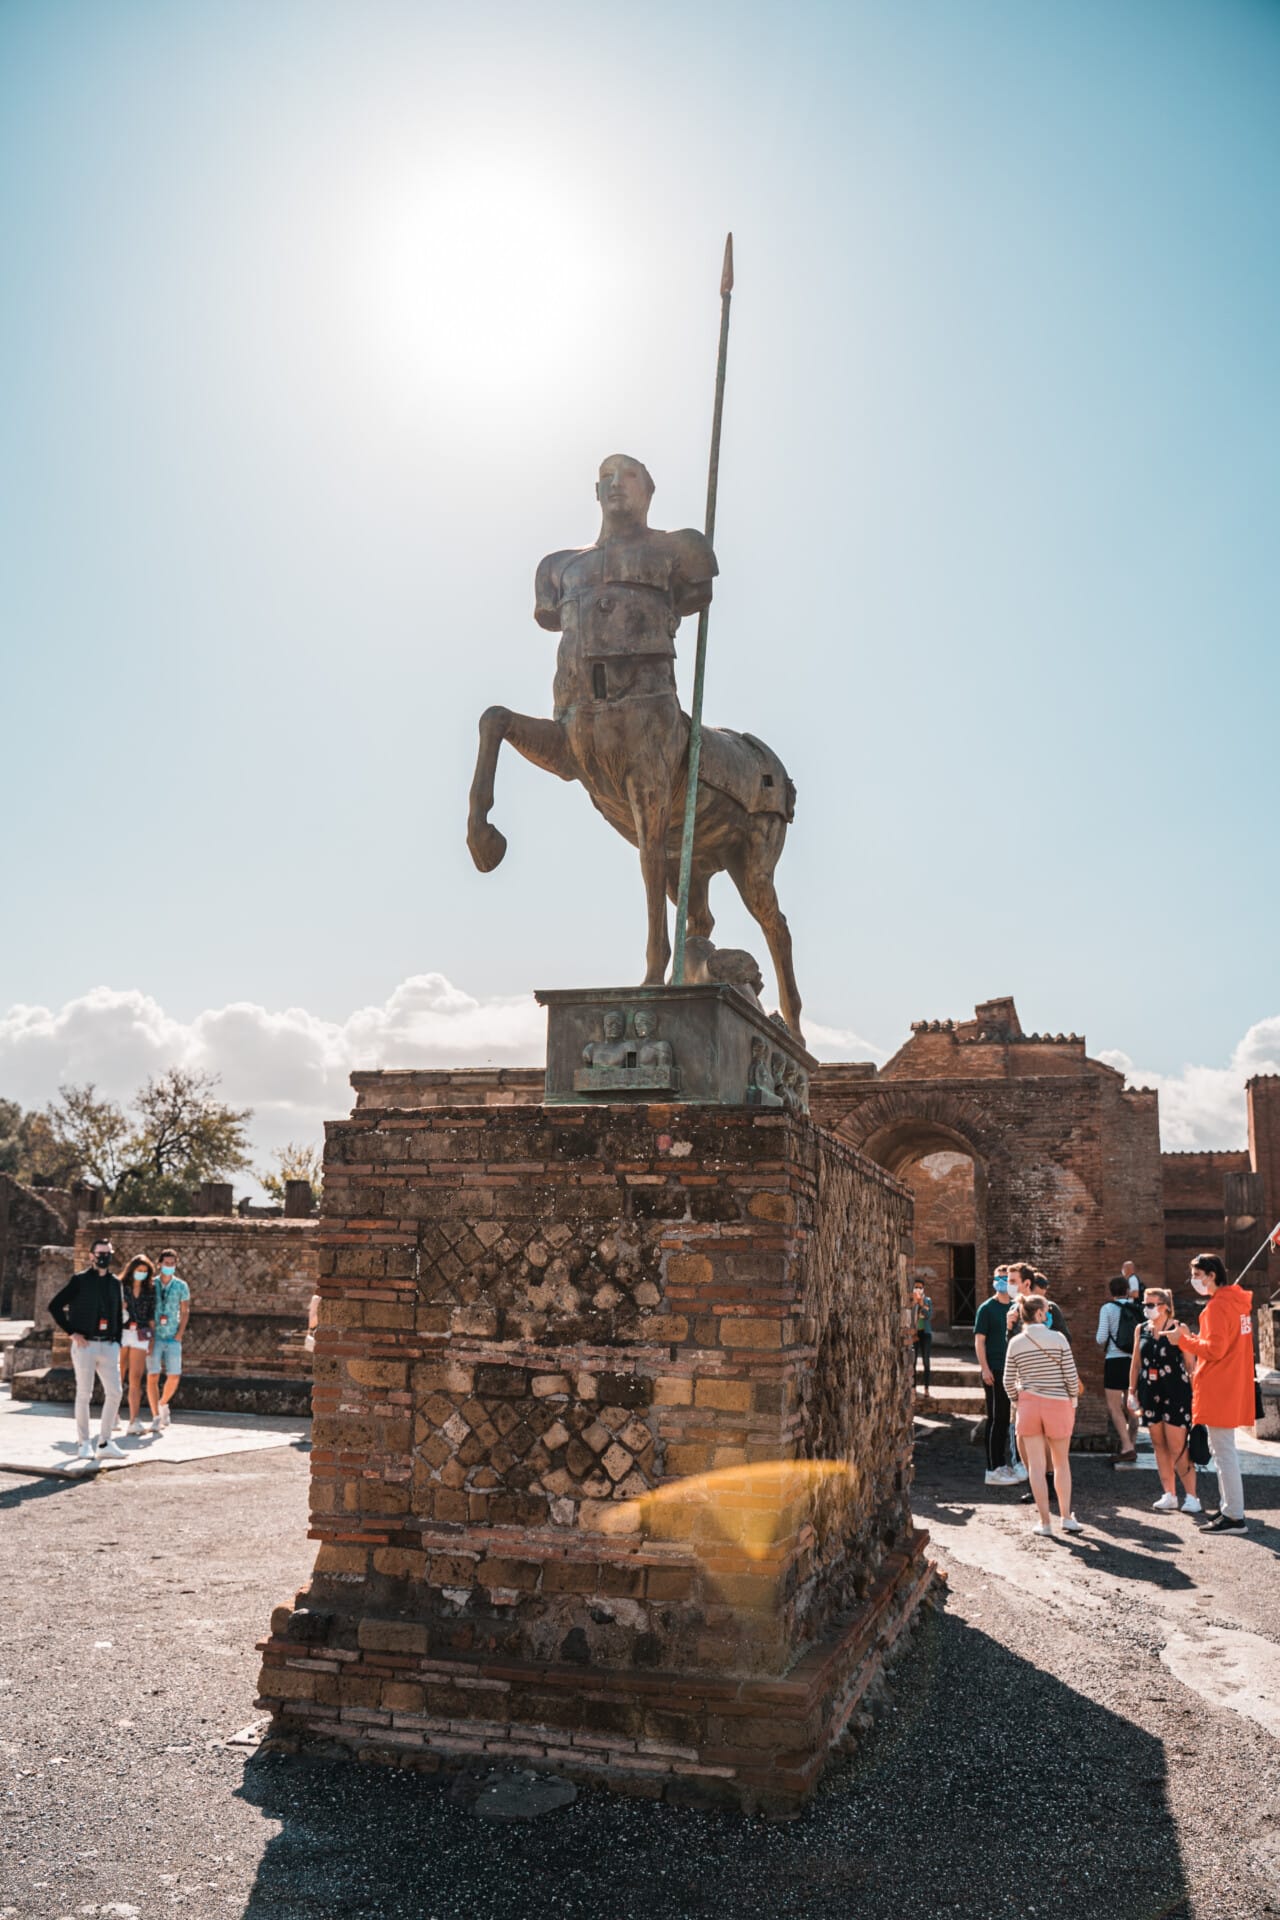 Pompei 12 - Pompeï bezoeken: alles dat je moet weten | Bezienswaardigheden & tips!